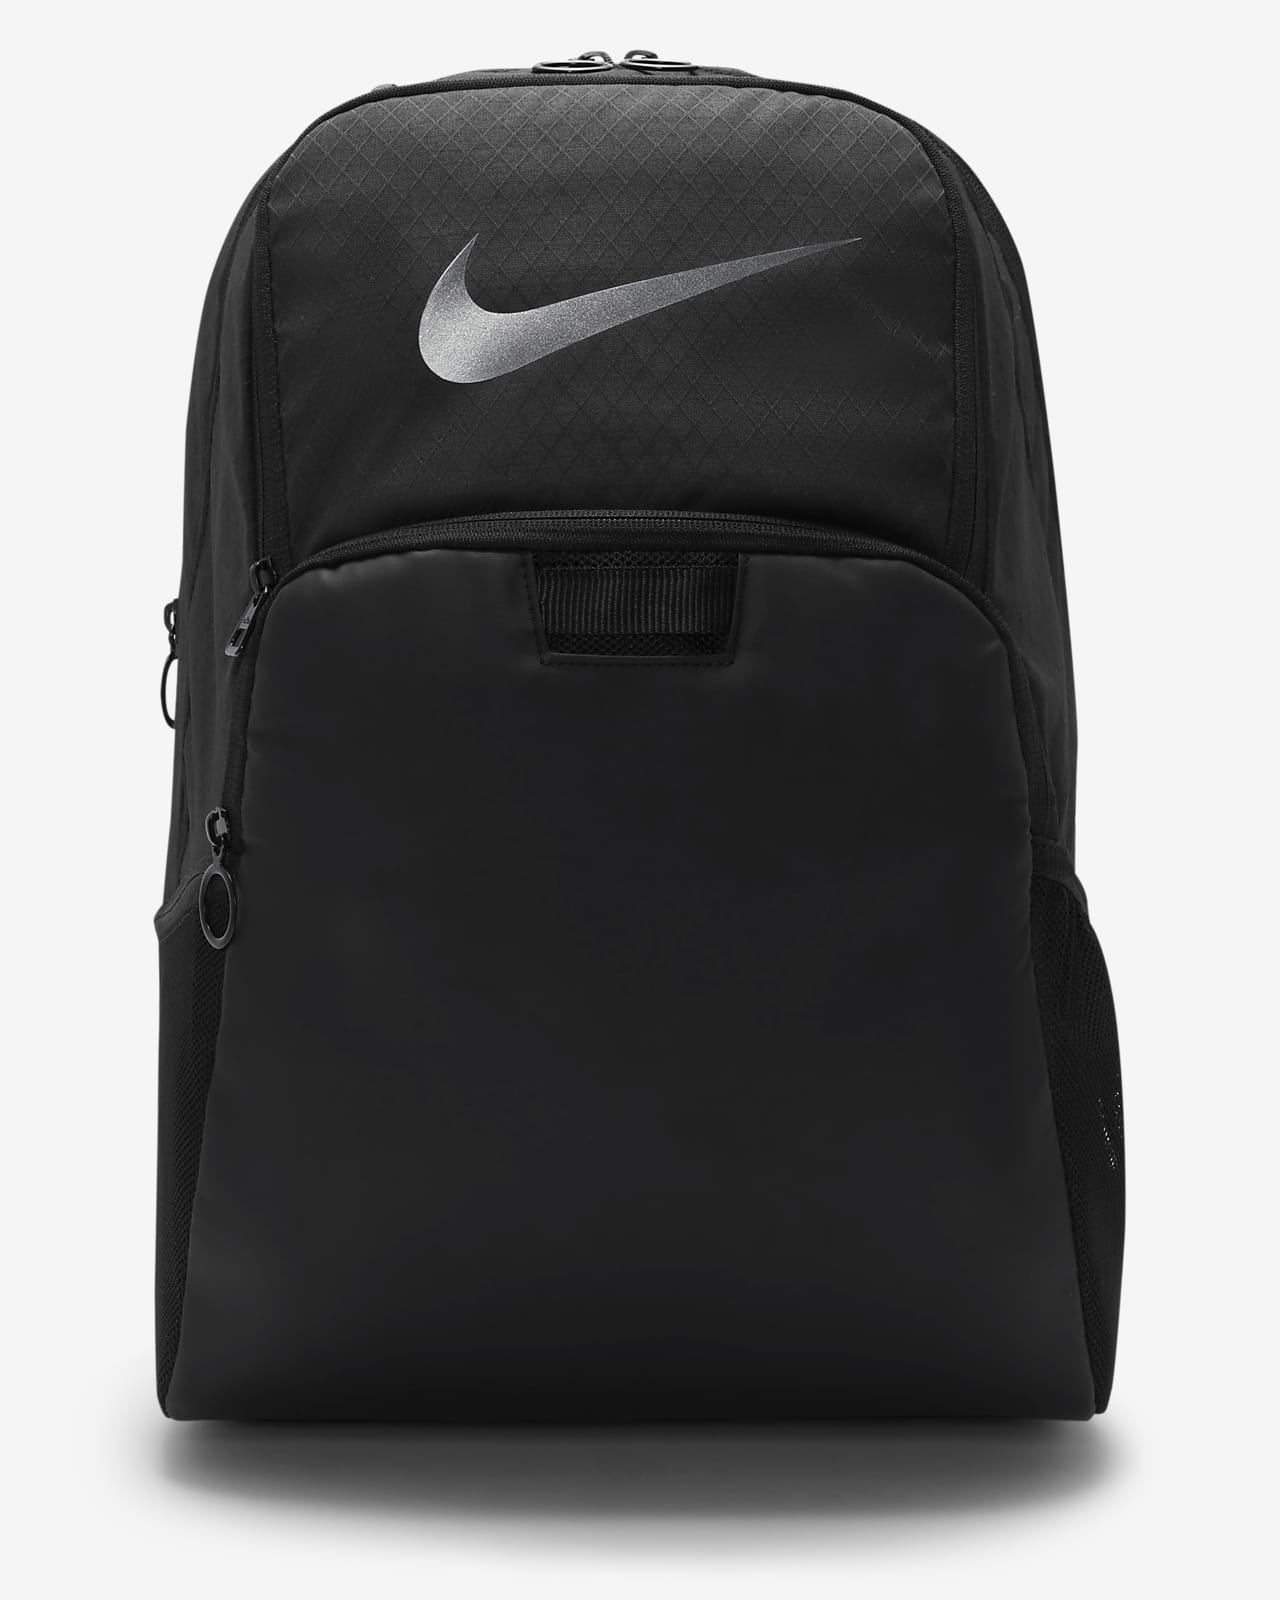 Tréninkový batoh Nike Brasilia s grafickým motivem do zimy (velký, 24 l)